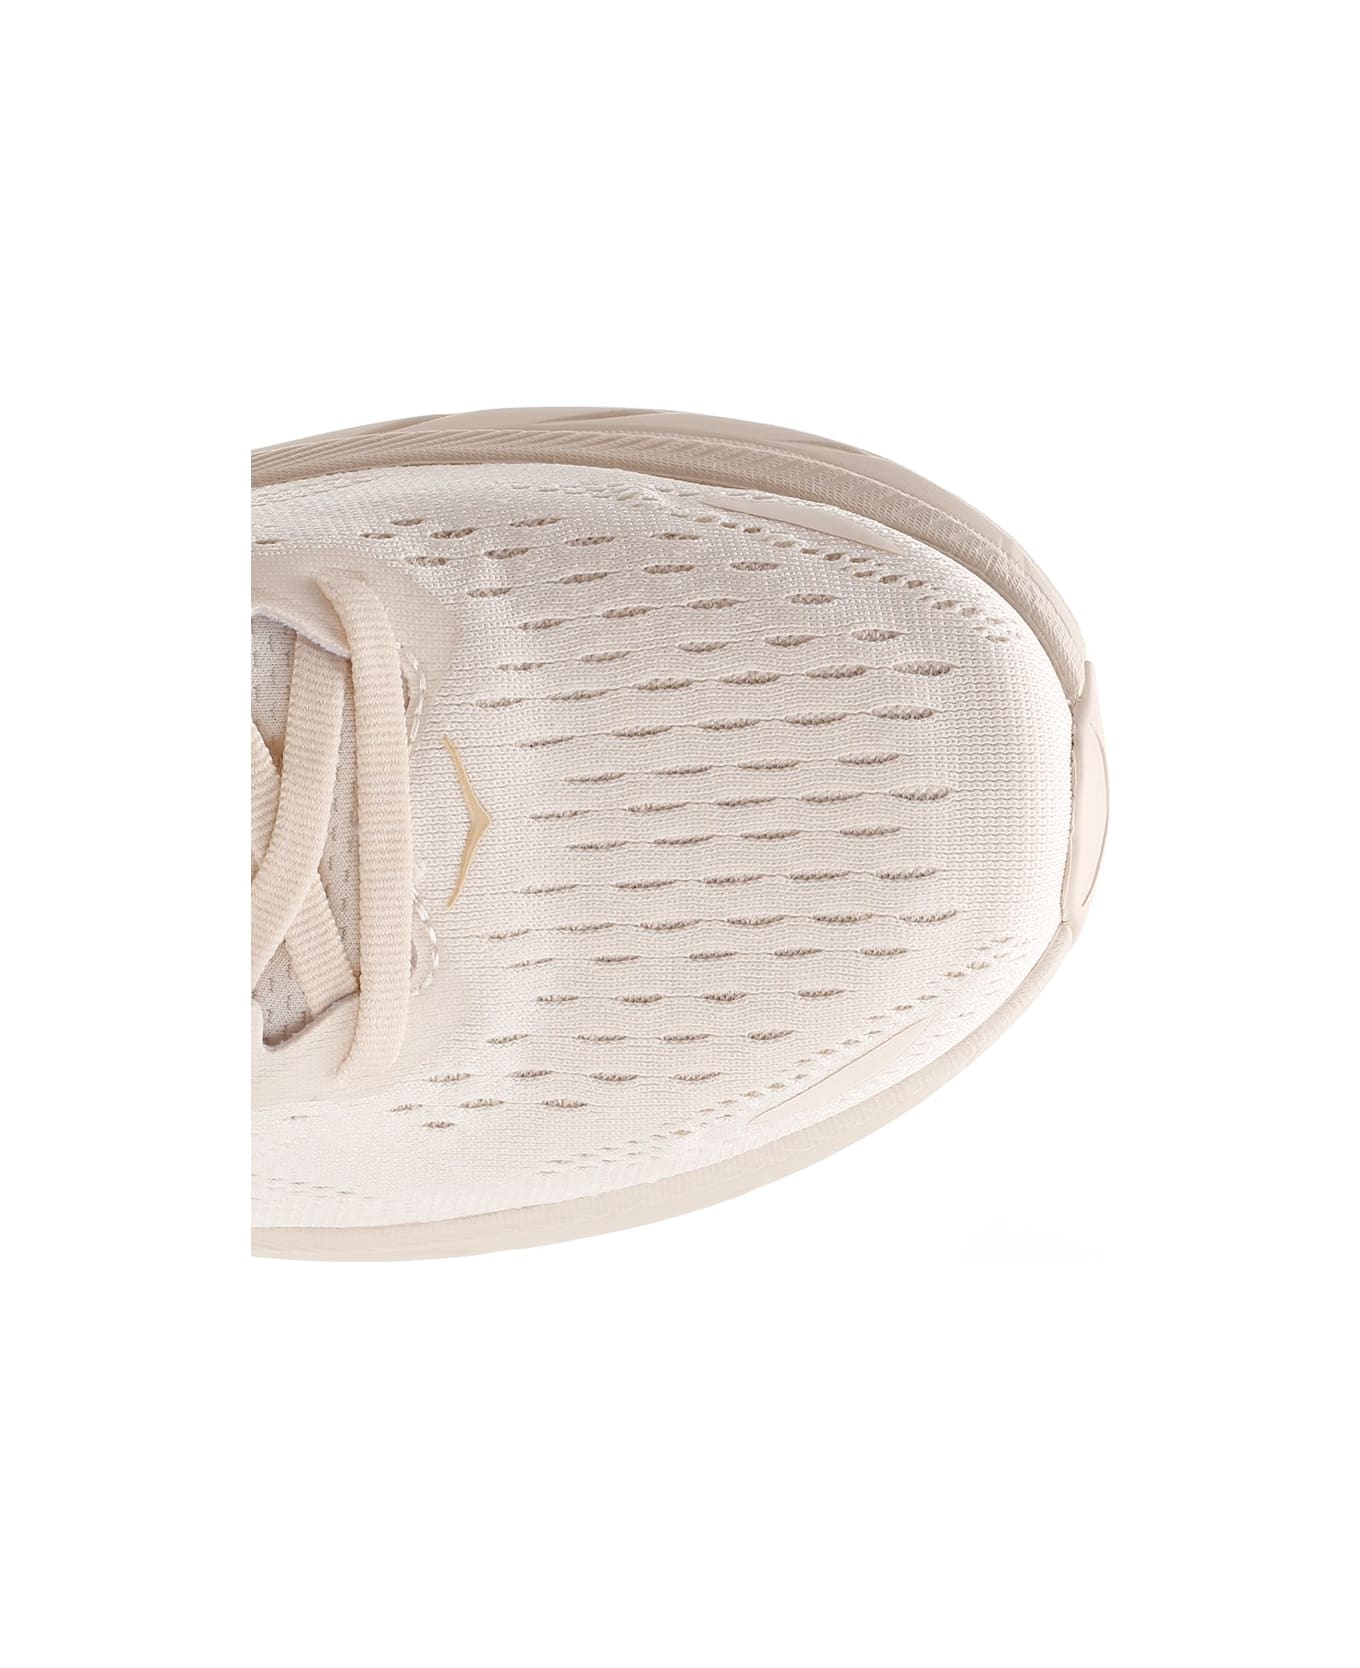 Hoka One One Cream "clifton 8" Sneakers - White